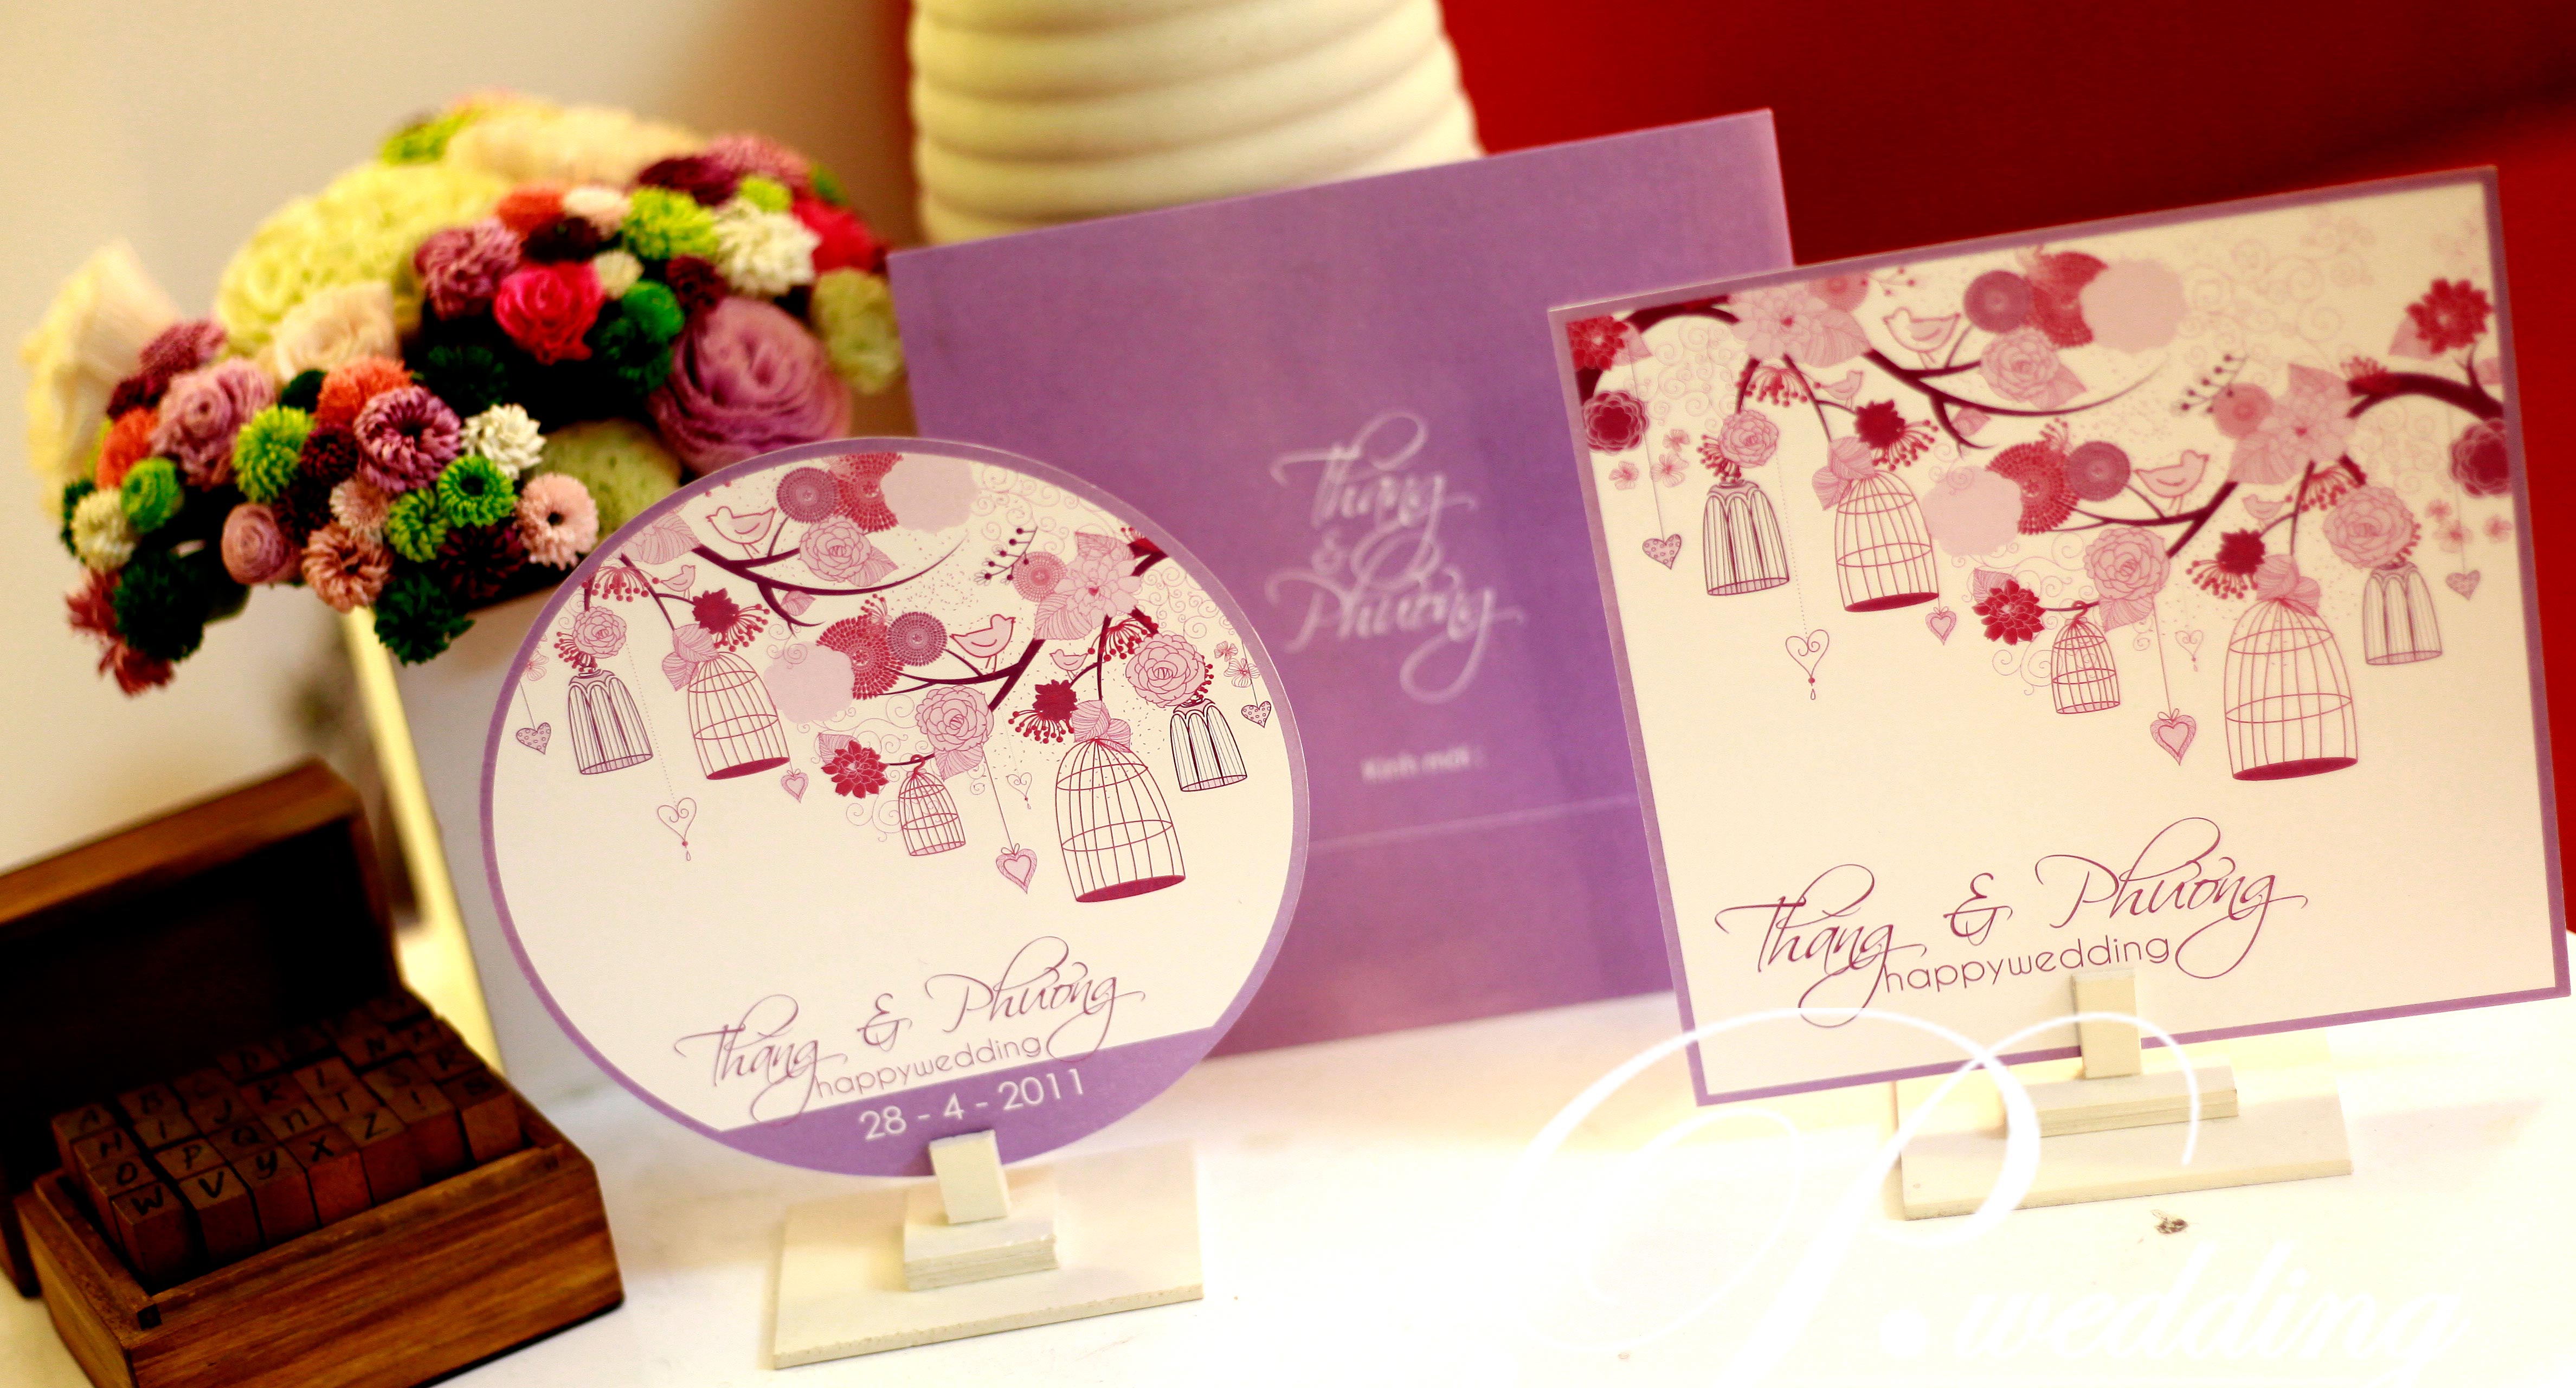 Thiệp cưới đẹp màu tím in họa tiết hồng xinh xắn